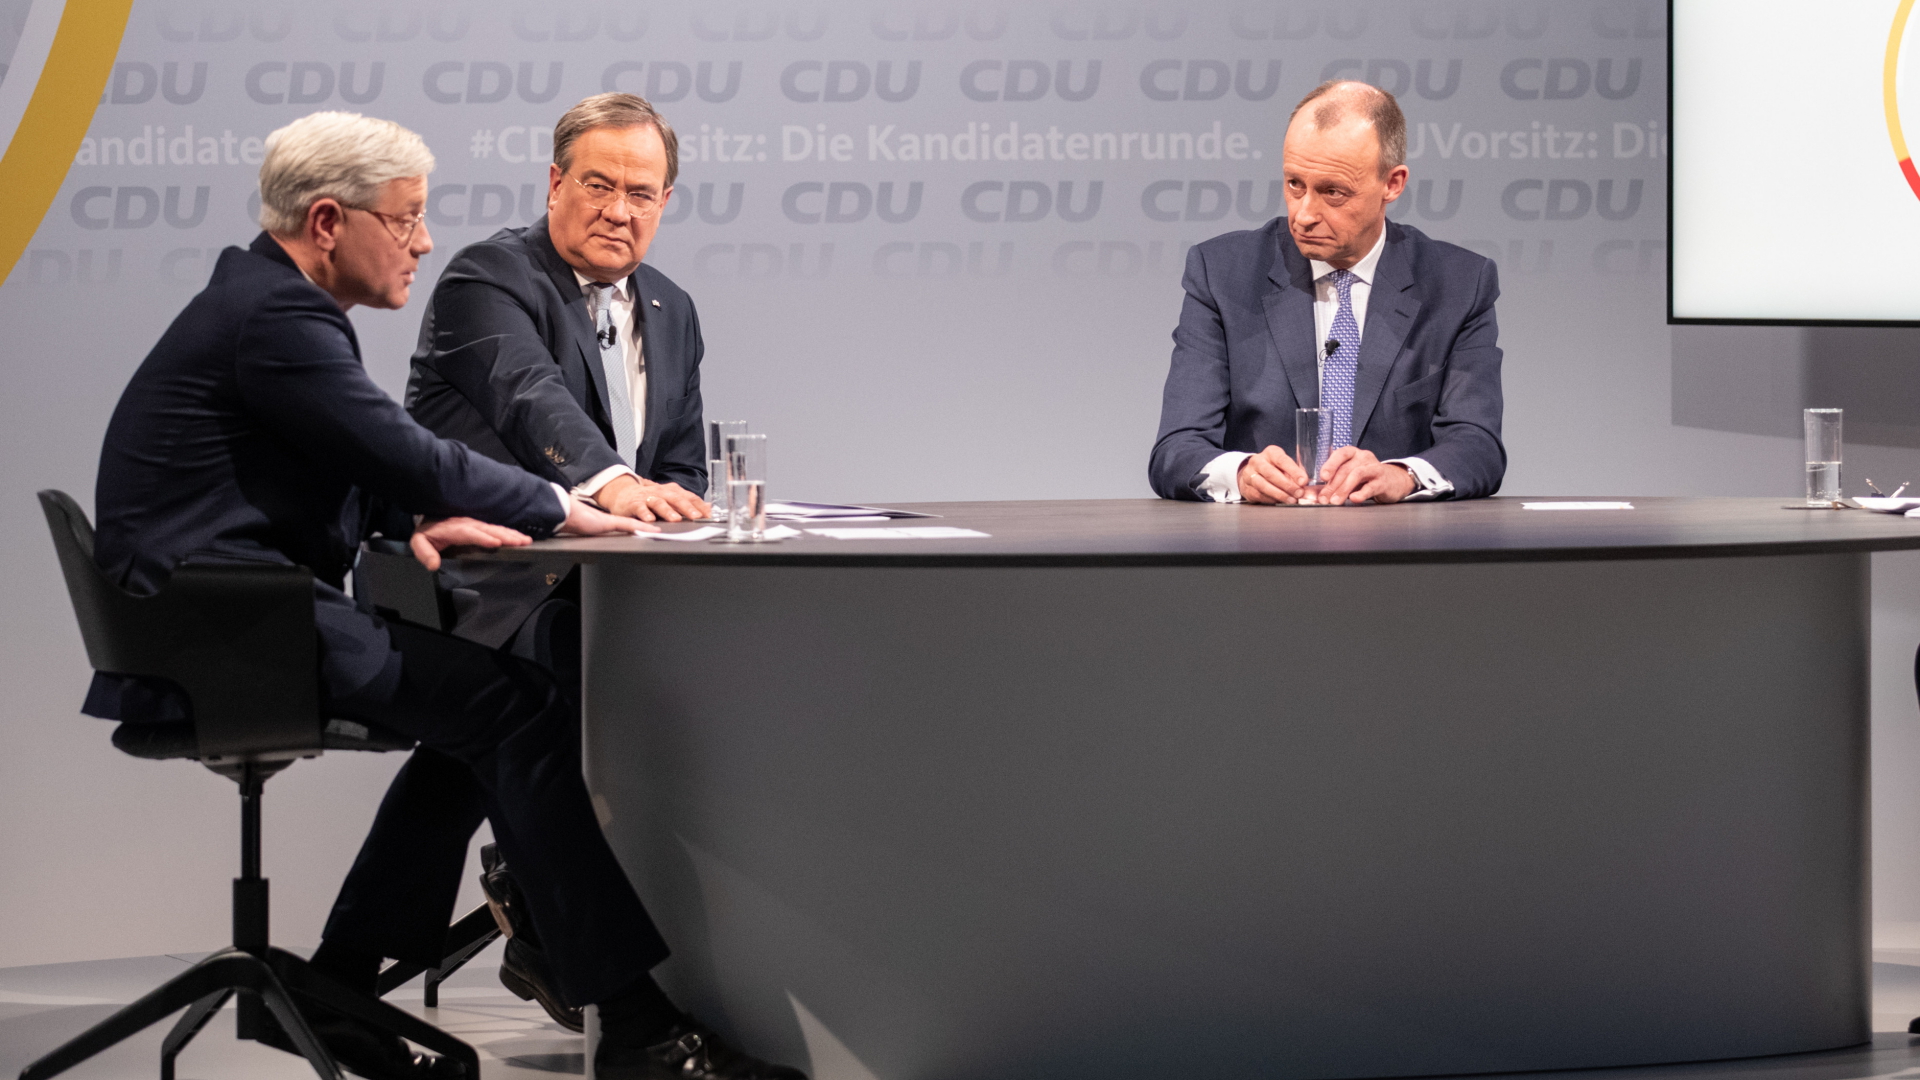 Die Kandidaten Röttgen, Laschet und Merz| Bildquelle: Andreas Gora/POOL/EPA-EFE/Shutte